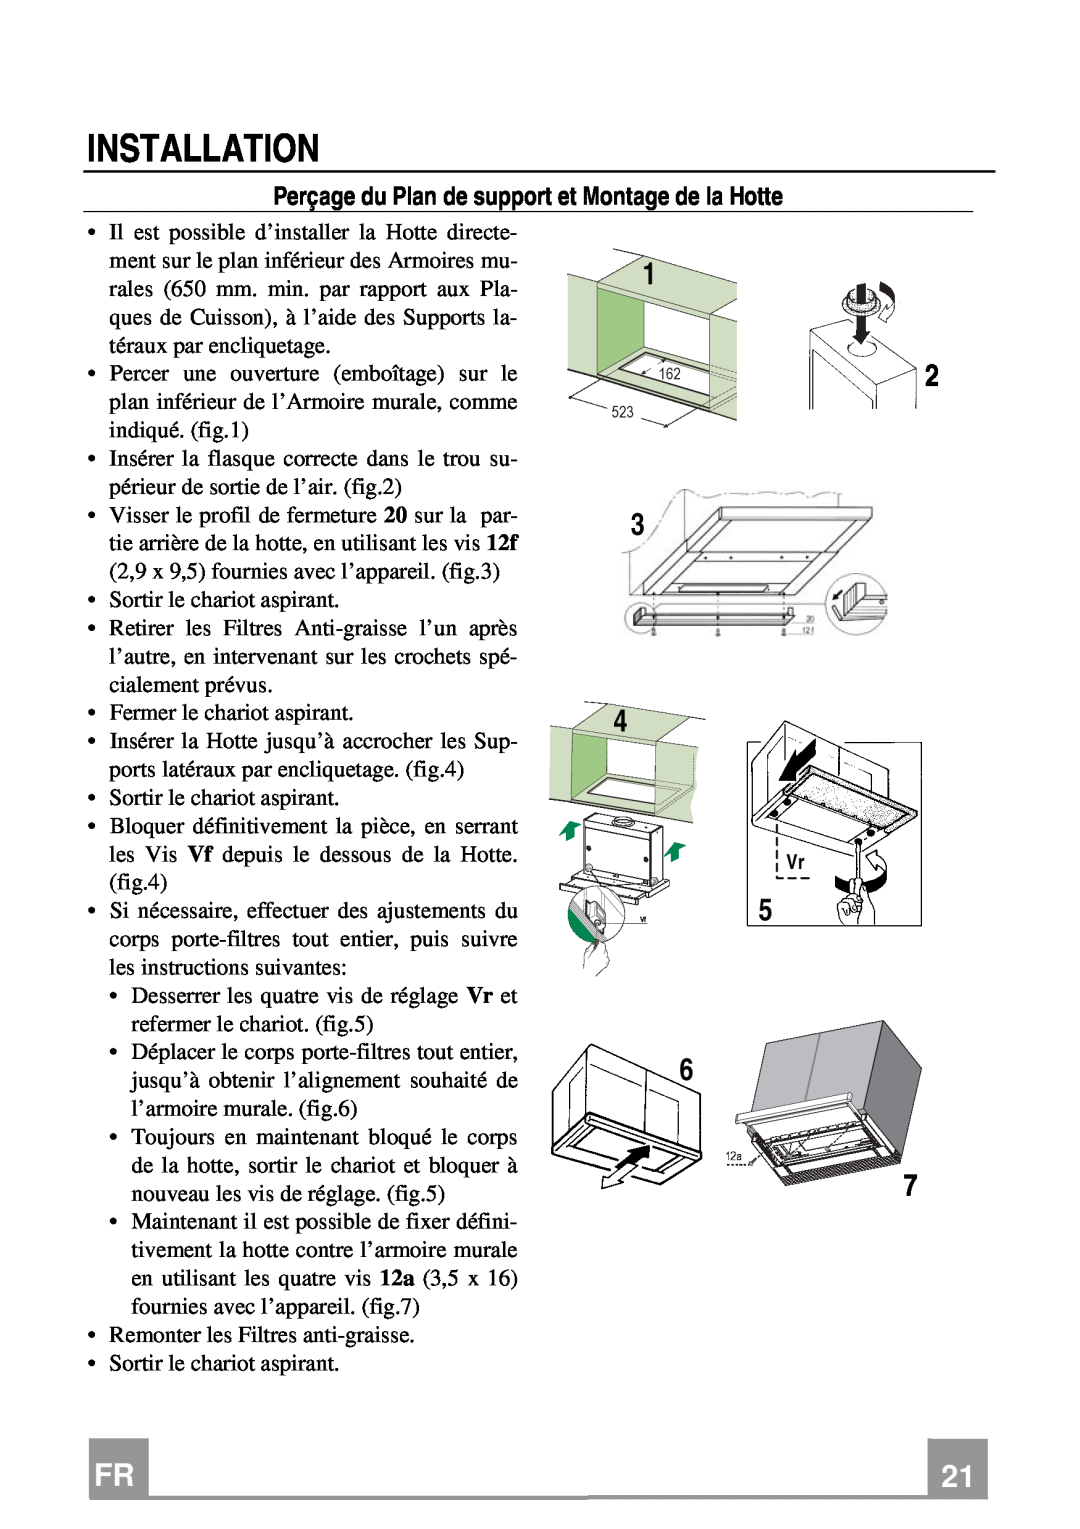 Franke Consumer Products FTC 922, FTC 622 manual Perçage du Plan de support et Montage de la Hotte, Installation 